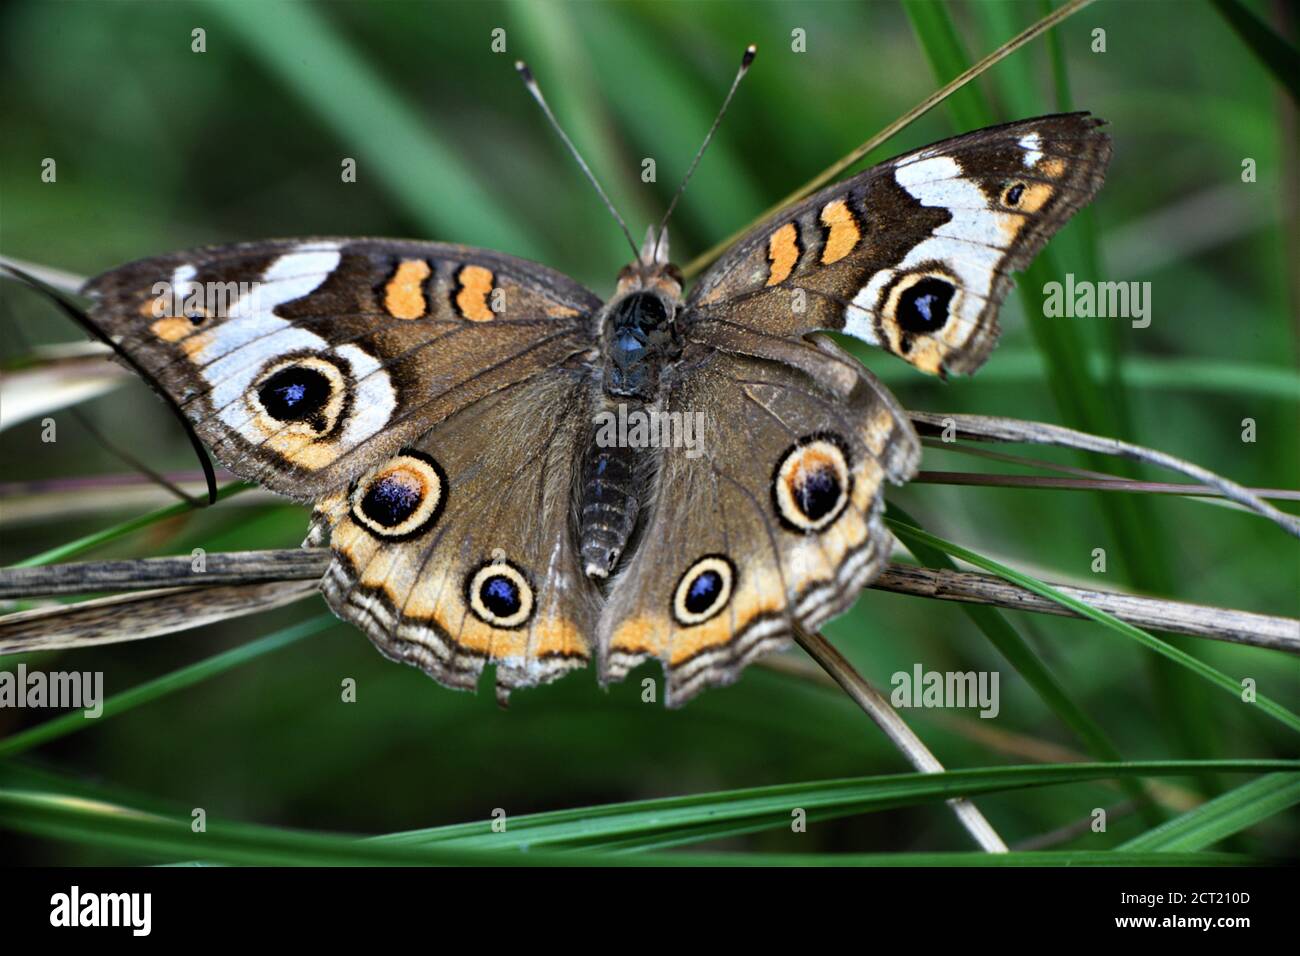 Mariposa común buckeye más vieja y descolorida. Foto de stock